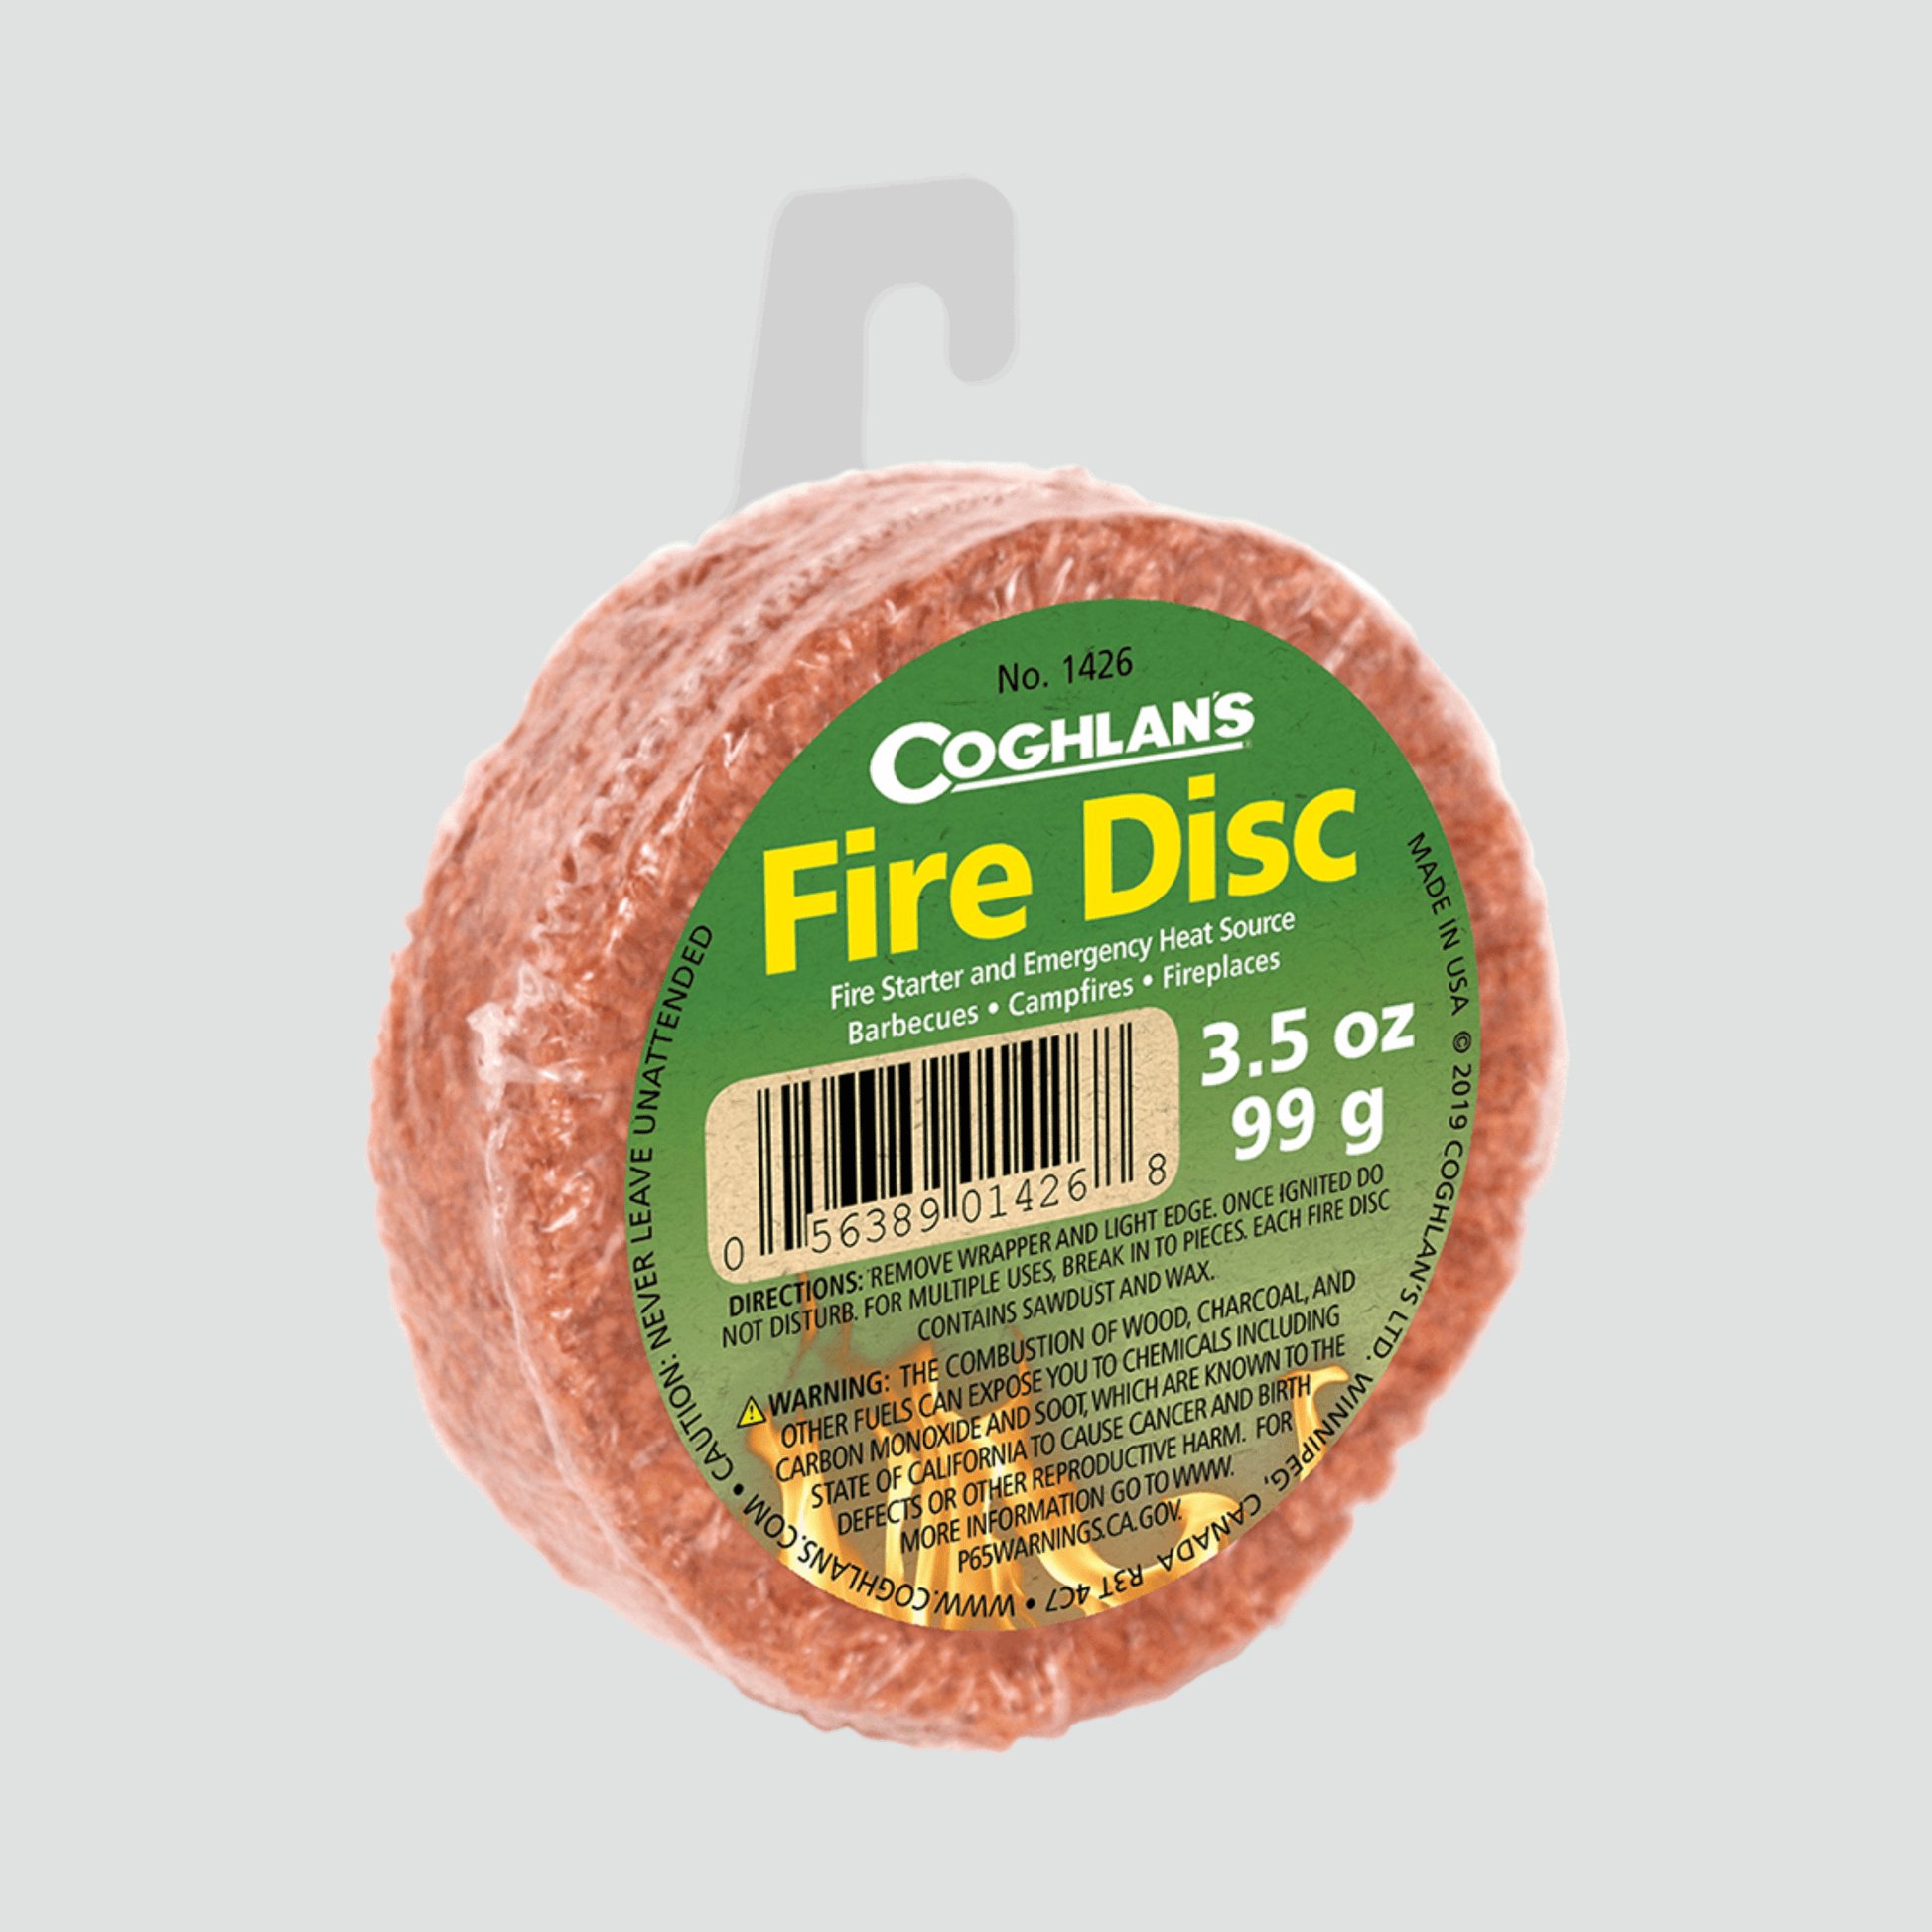 Fire Disc fire starter